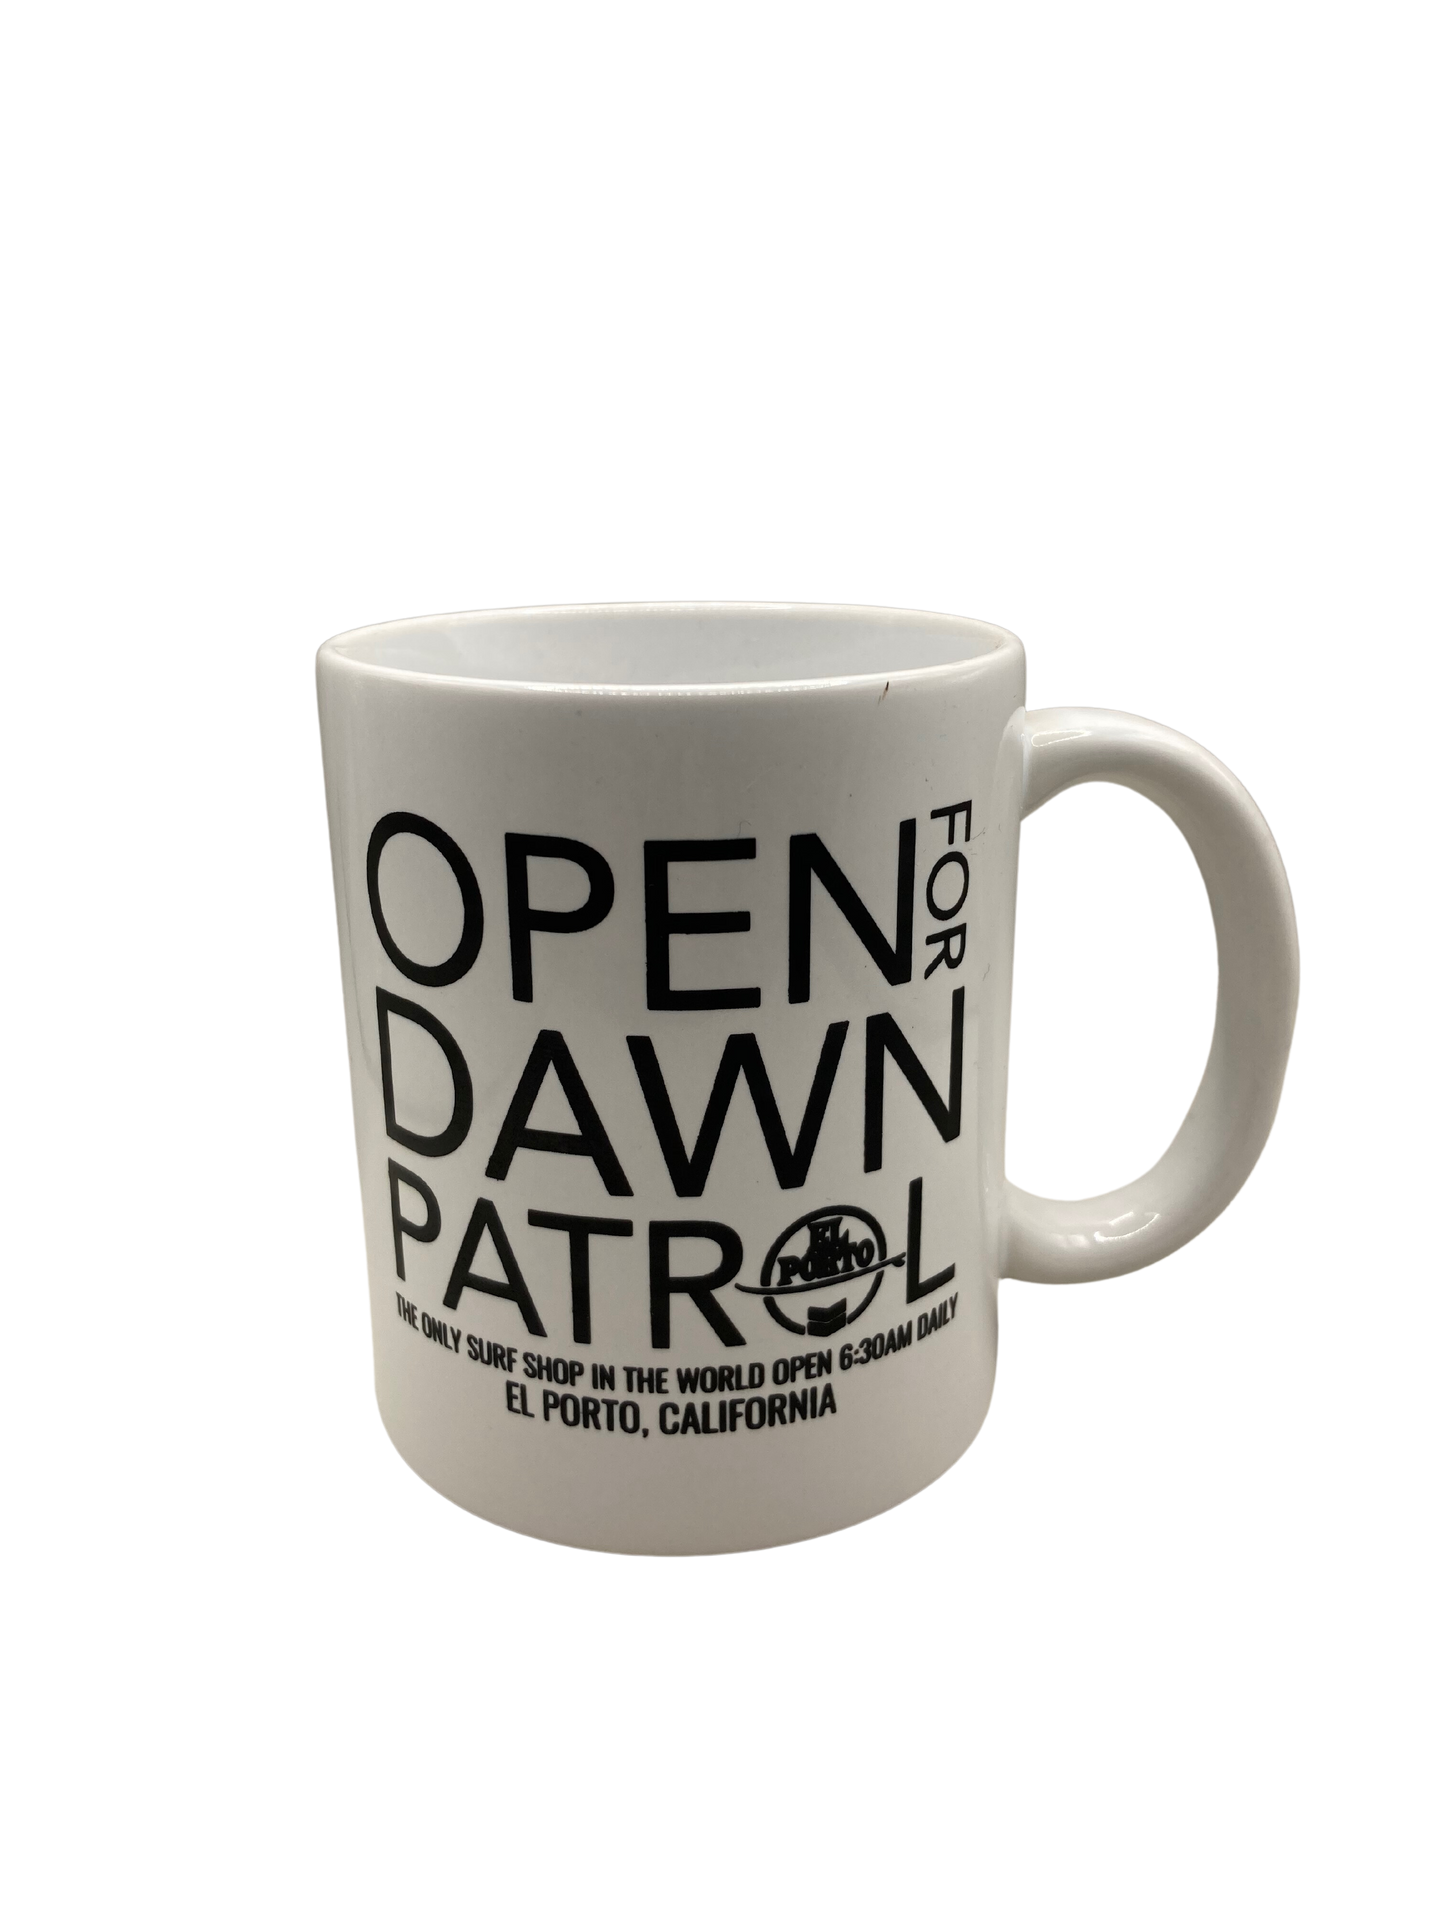 Open for dawn patrol mug